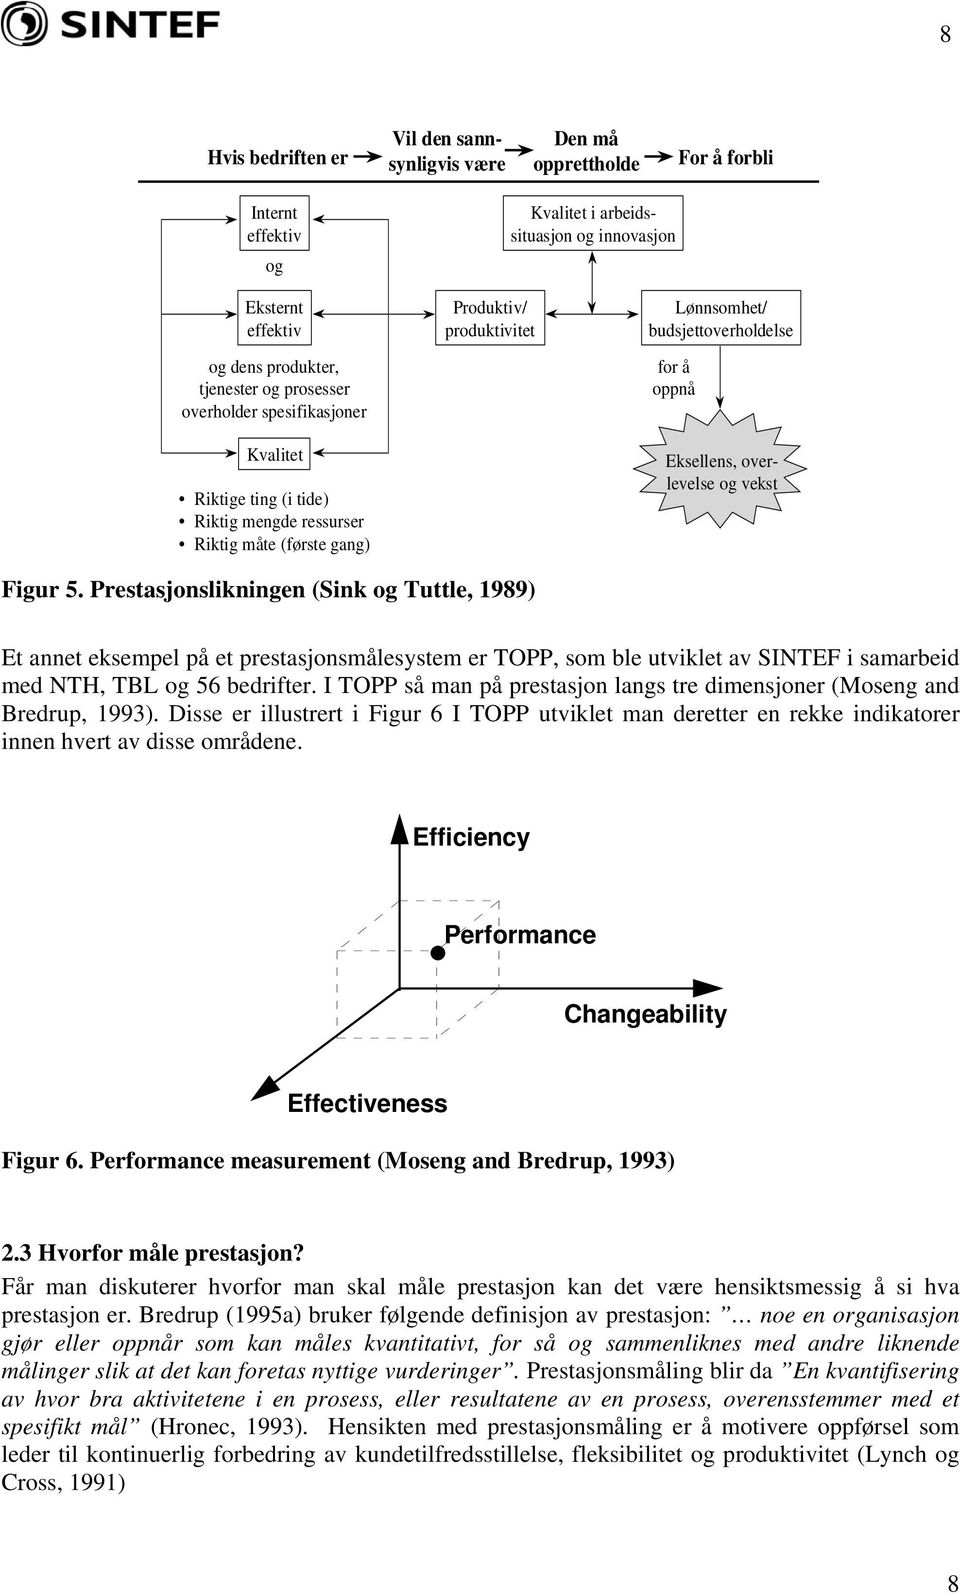 overlevelse og vekst Figur 5. Prestasjonslikningen (Sink og Tuttle, 1989) Et annet eksempel på et prestasjonsmålesystem er TOPP, som ble utviklet av SINTEF i samarbeid med NTH, TBL og 56 bedrifter.